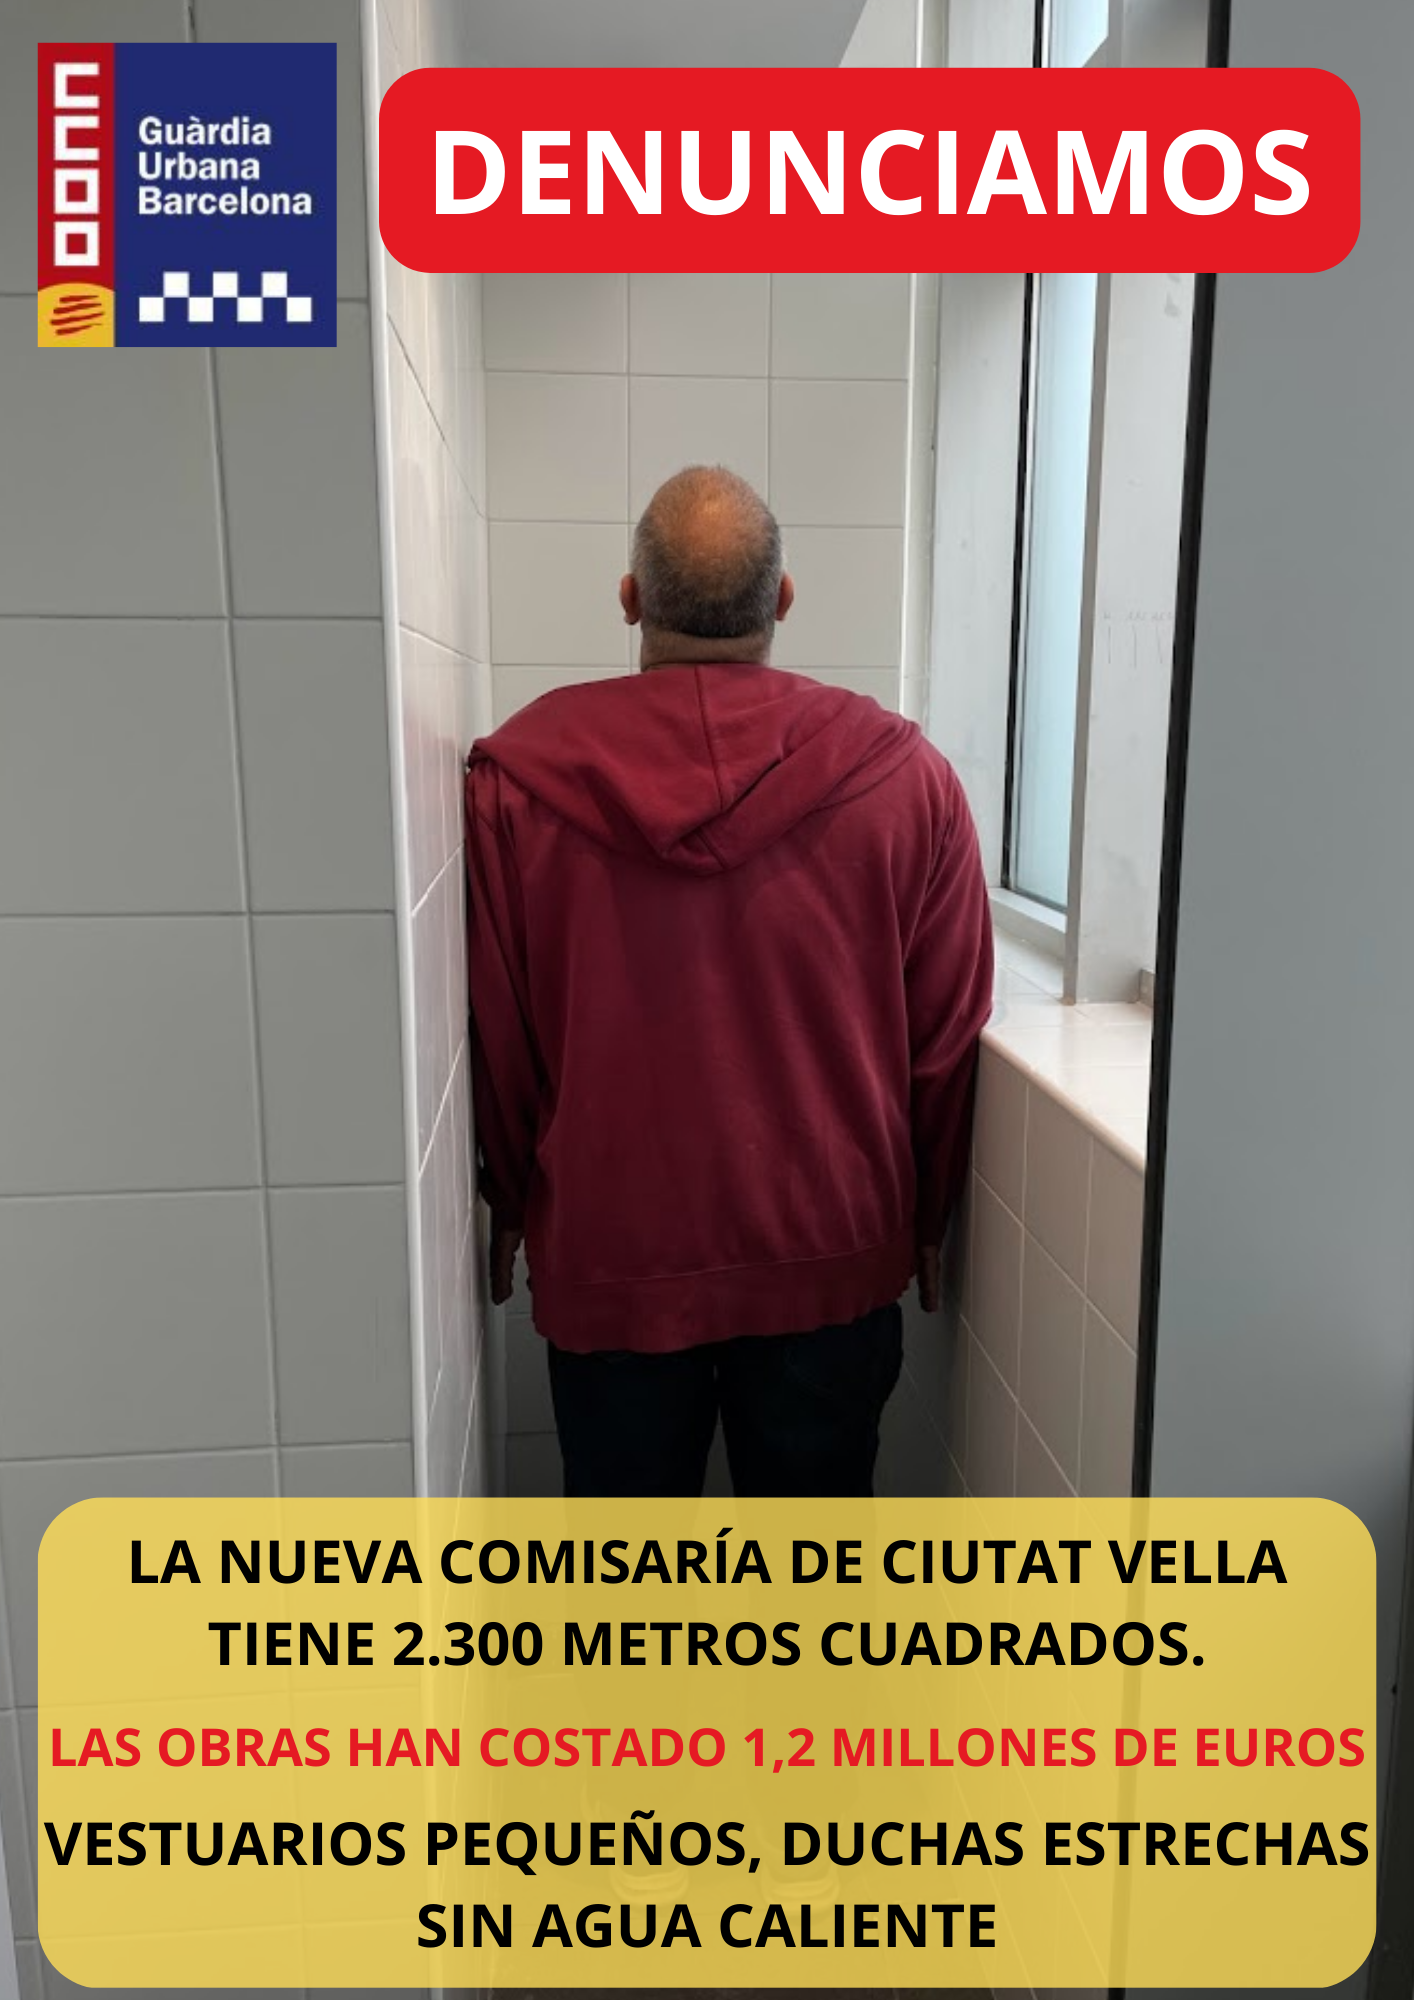 Deficiències en les instal·lacions de les comissaries de la Guàrdia Urbana de Barcelona